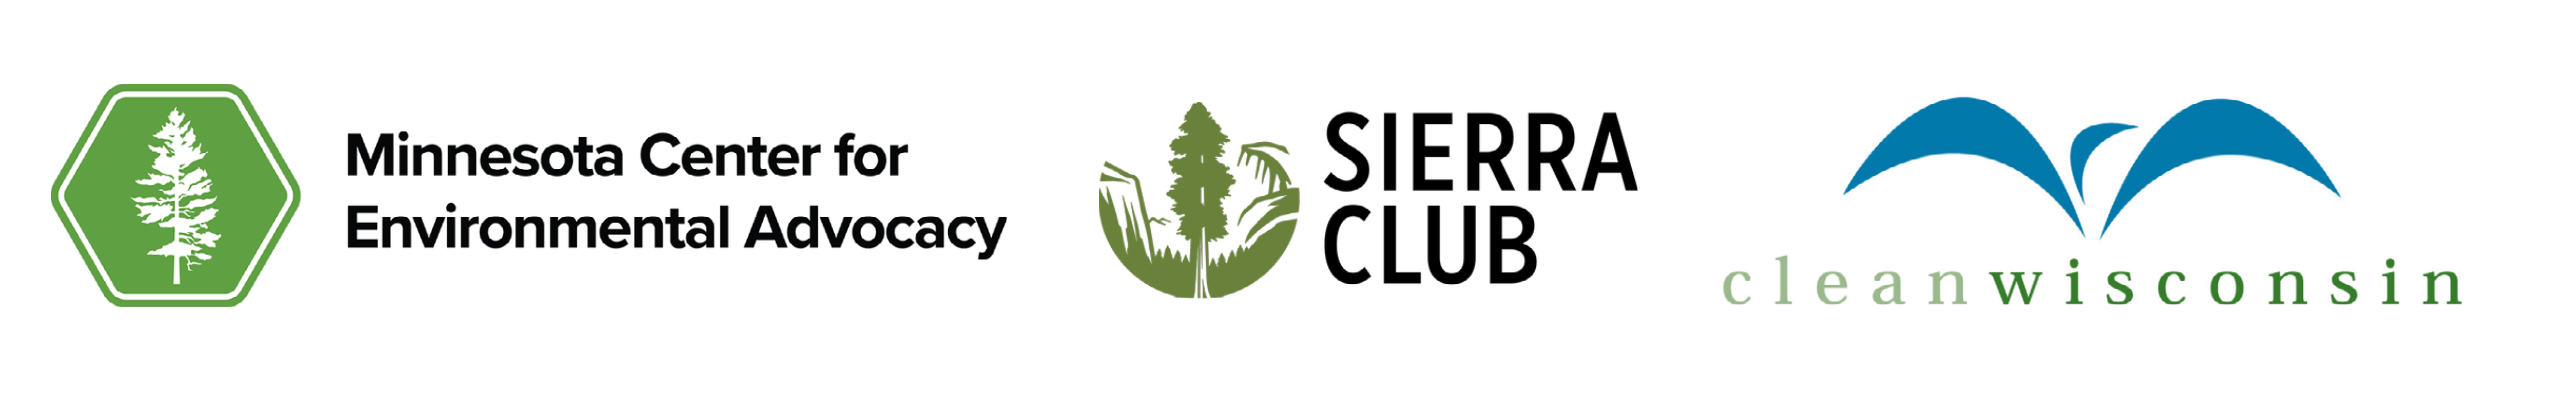 MCEA logo, sierra club logo, clean wisconsin logo